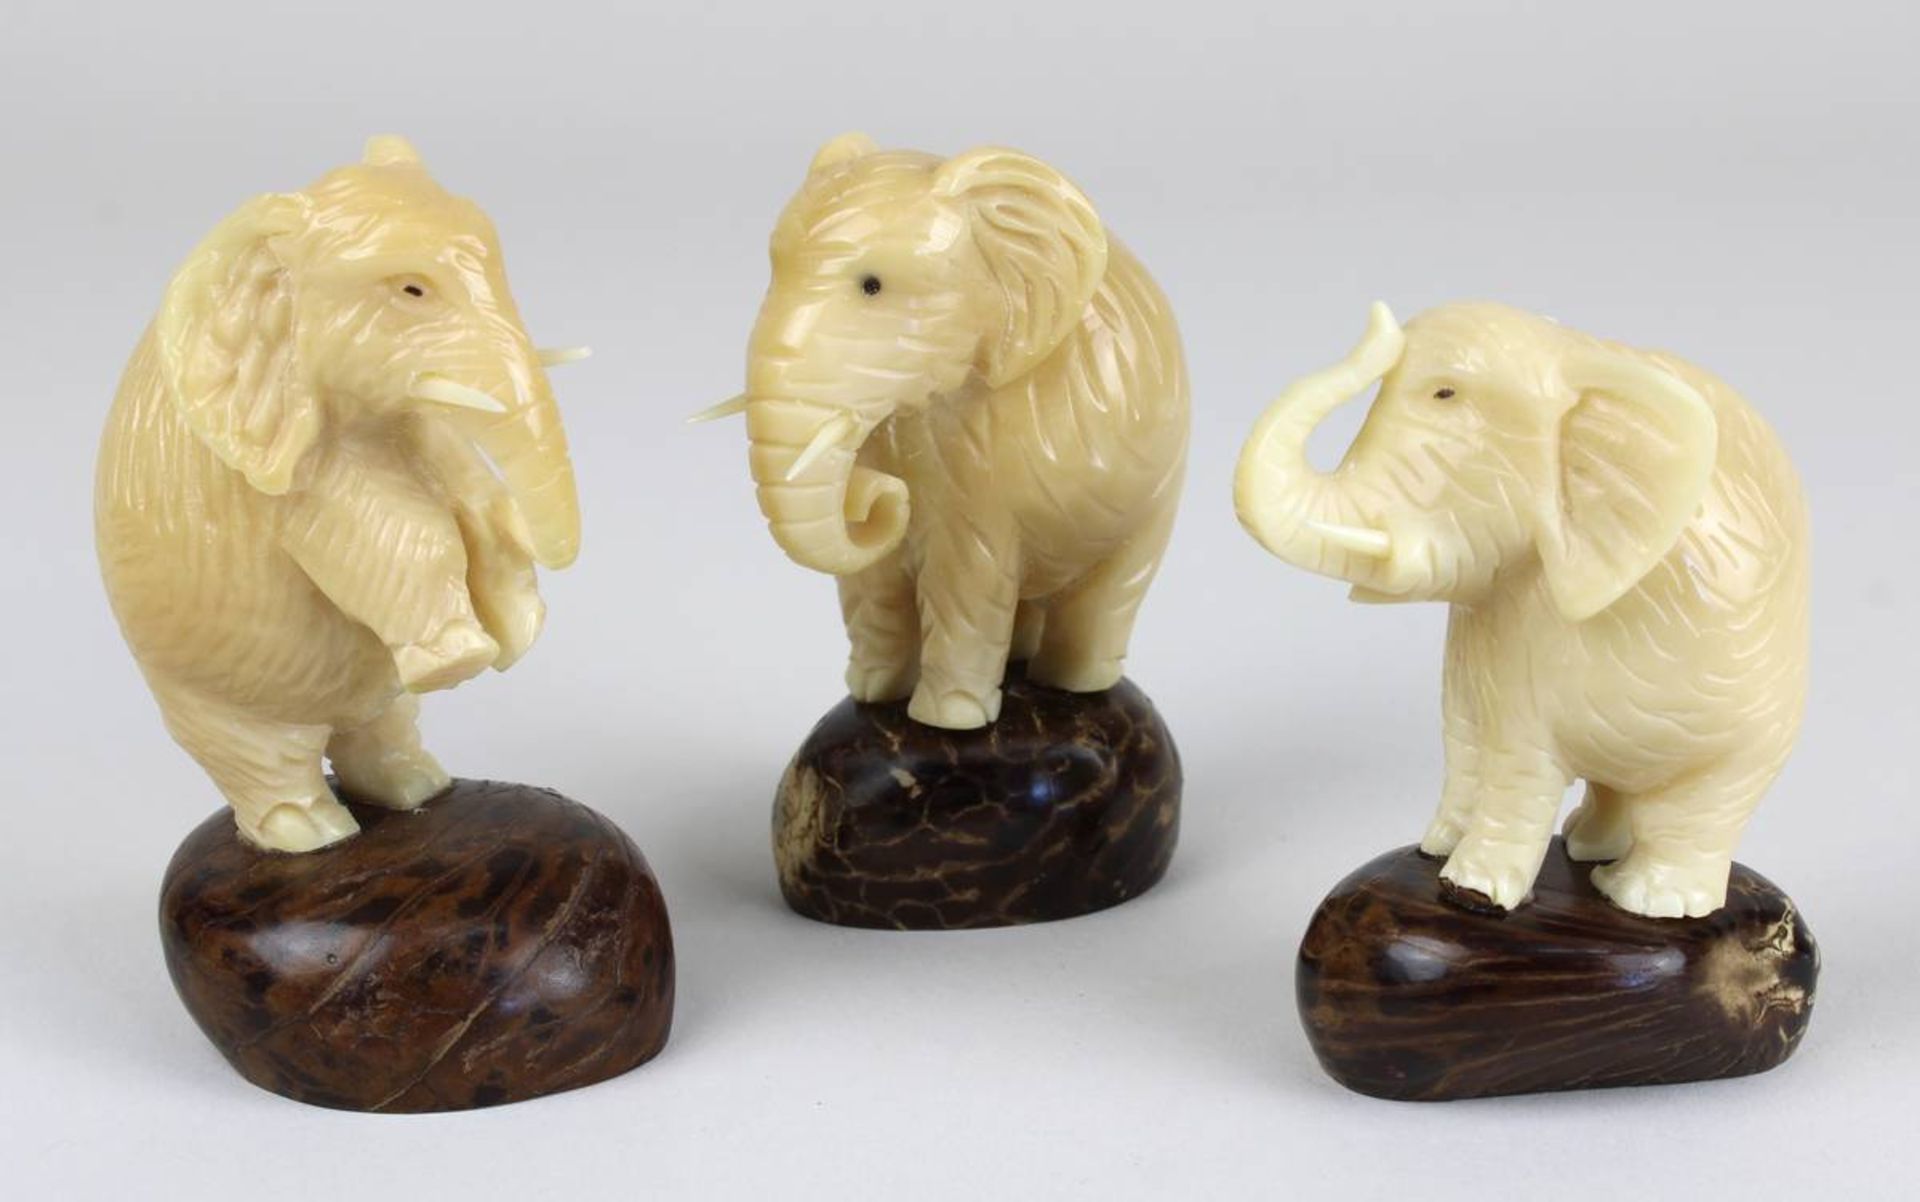 3 Elefantenfiguren aus Taguanuss, jew. aus einer Nuss geschnitzt und auf einer halben Nuss als